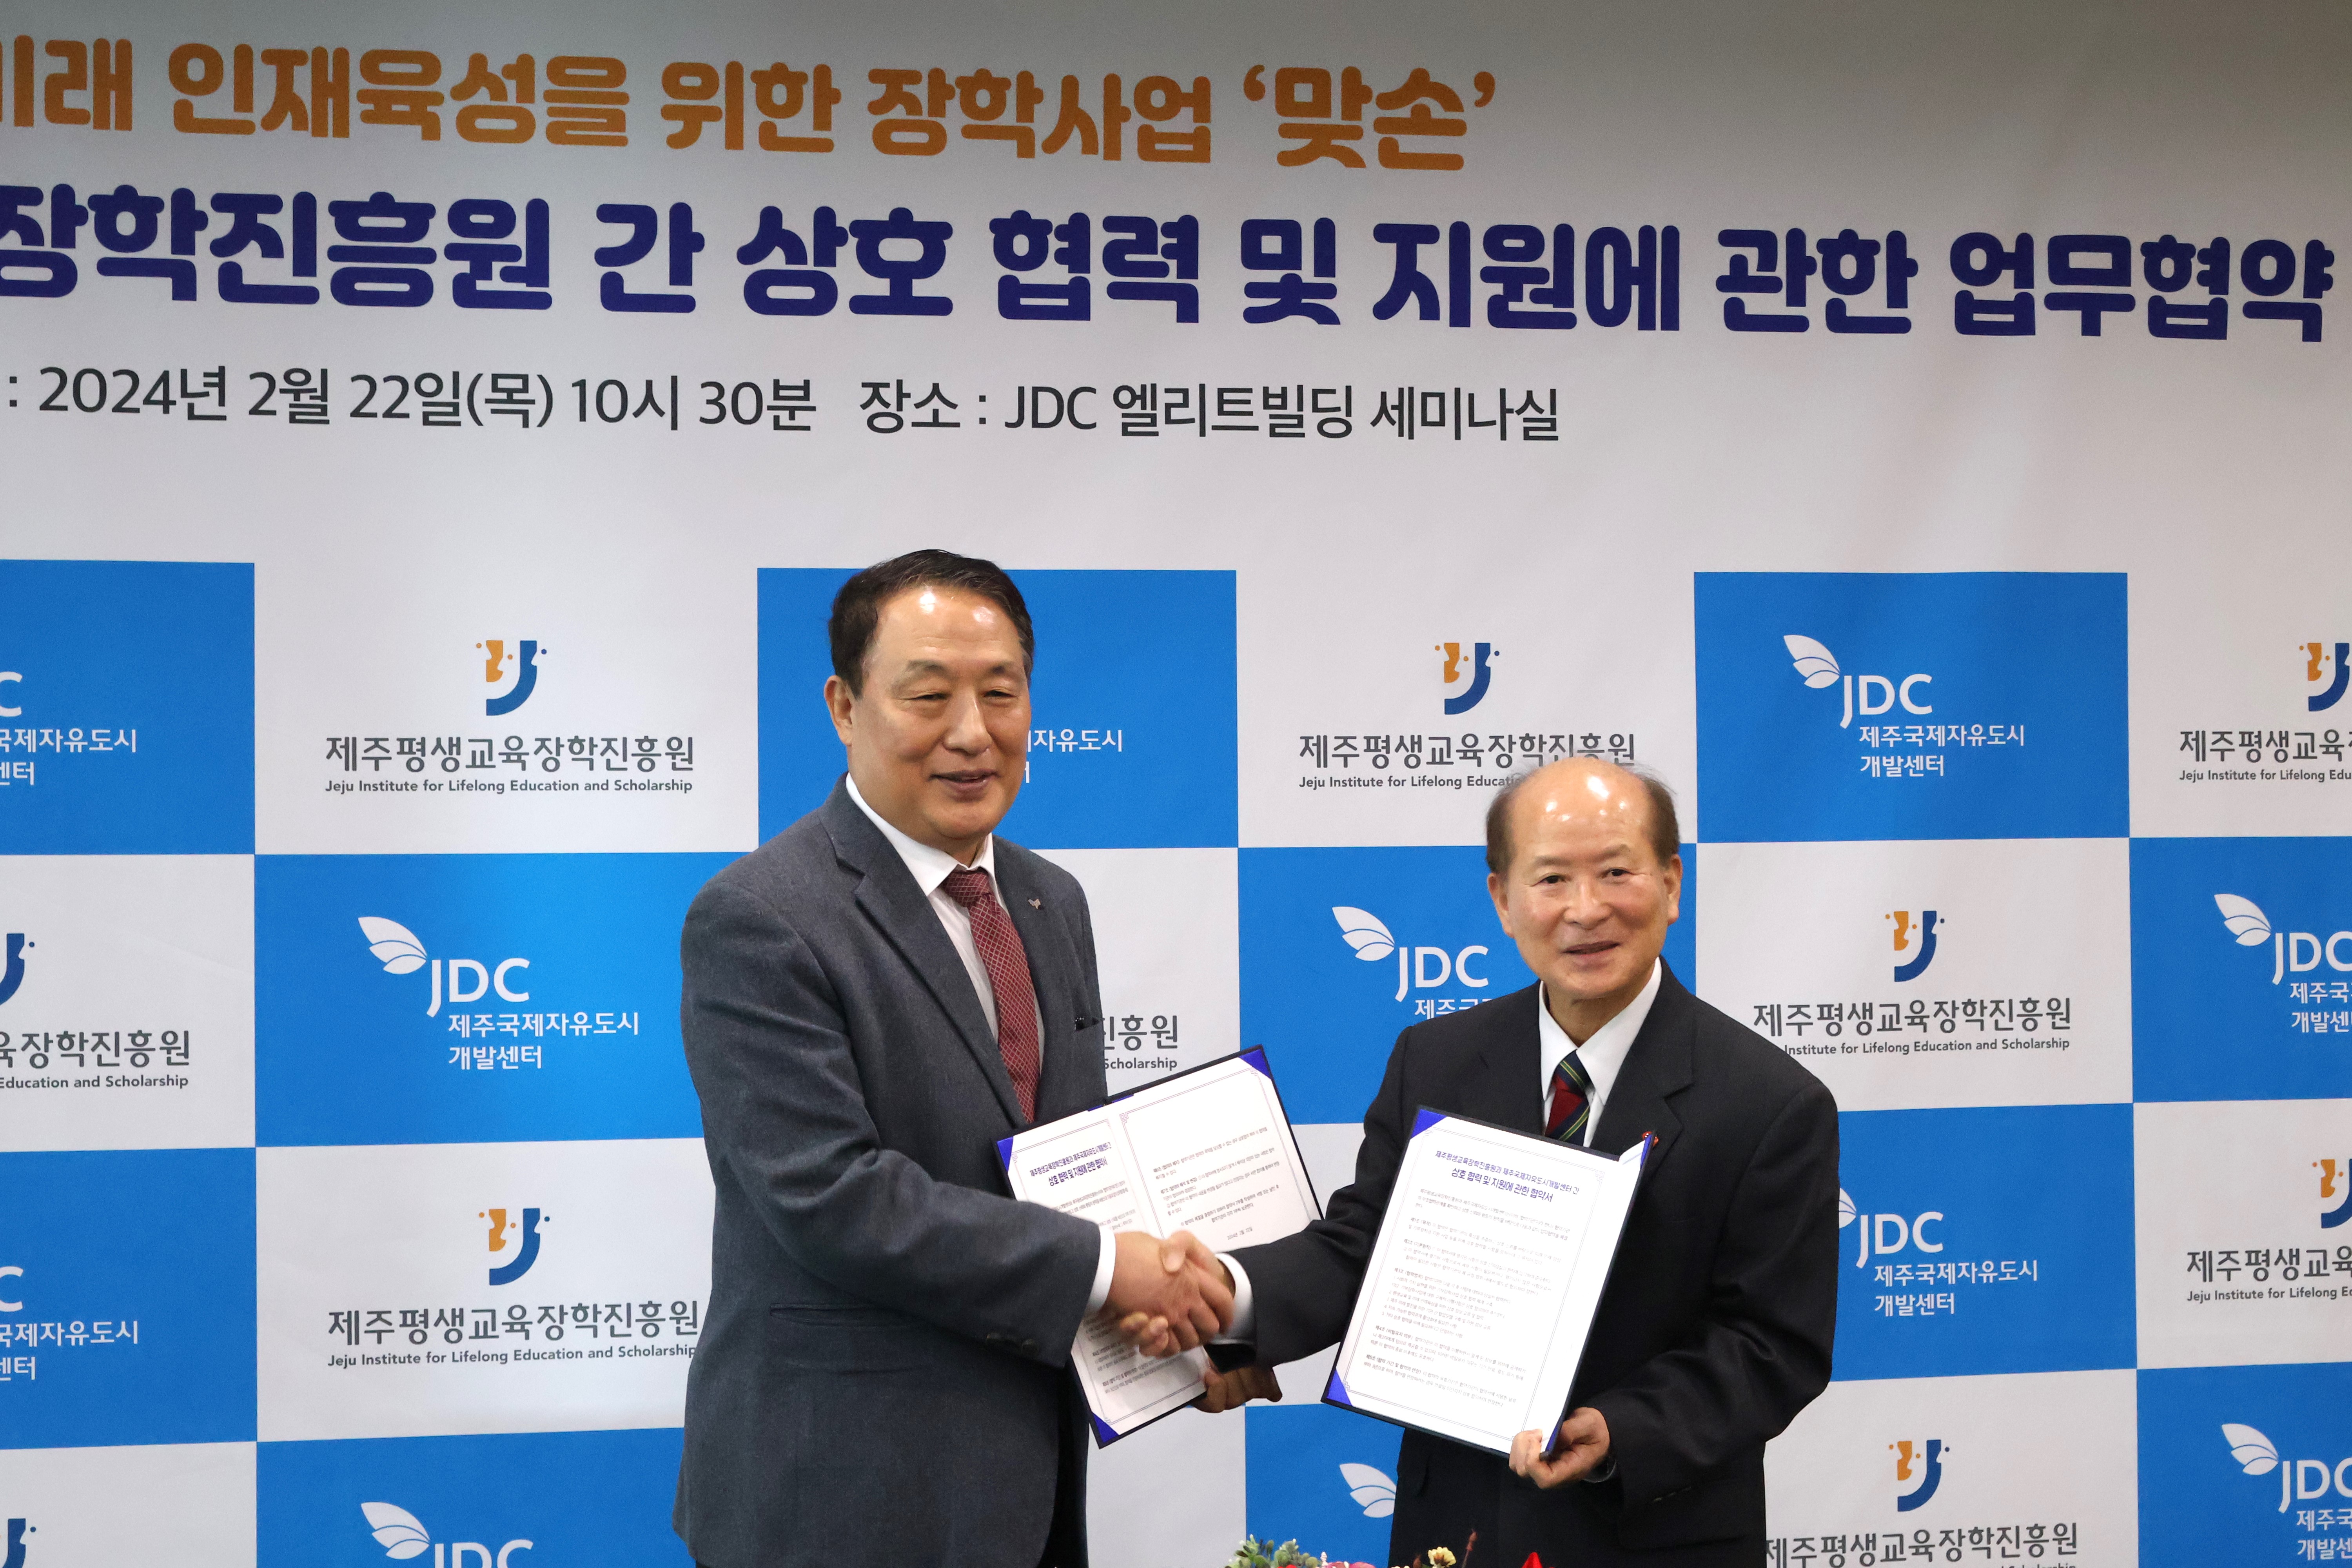 제주평생교육장학진흥원-JDC 간 상호협력 및 지원에 관한 업무 협약 #1